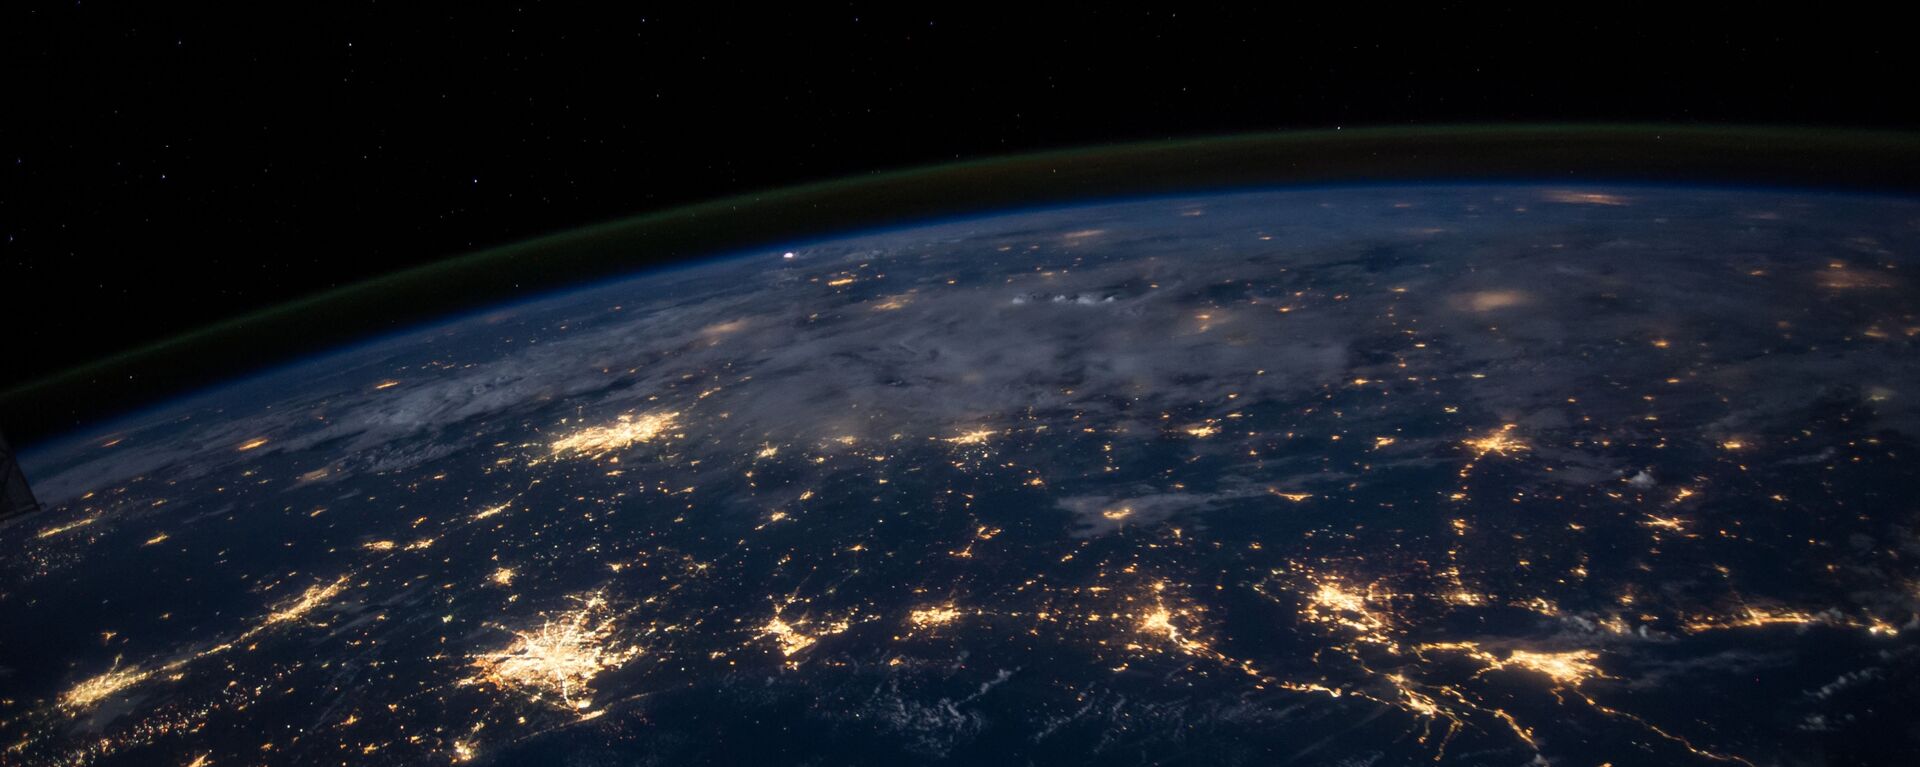 La Tierra vista desde el espacio (imagen referencial) - Sputnik Mundo, 1920, 24.07.2020